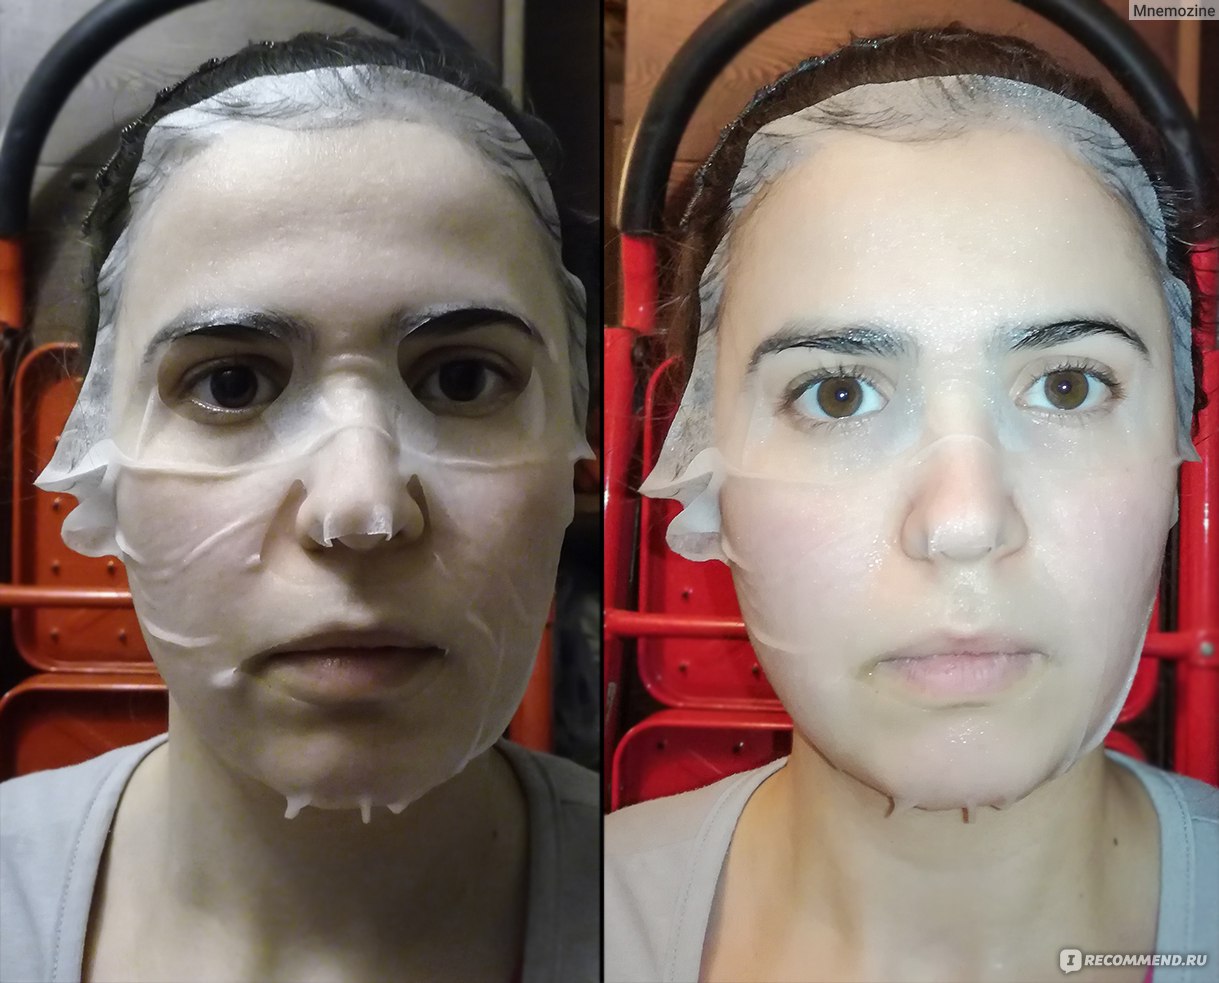 После тканевой маски нужно ли мыть лицо. Тканевая маска для лица до после. До и после использование тканевых масок. Результат от применения тканевых масок. Результат после тканевой маски на первый день.